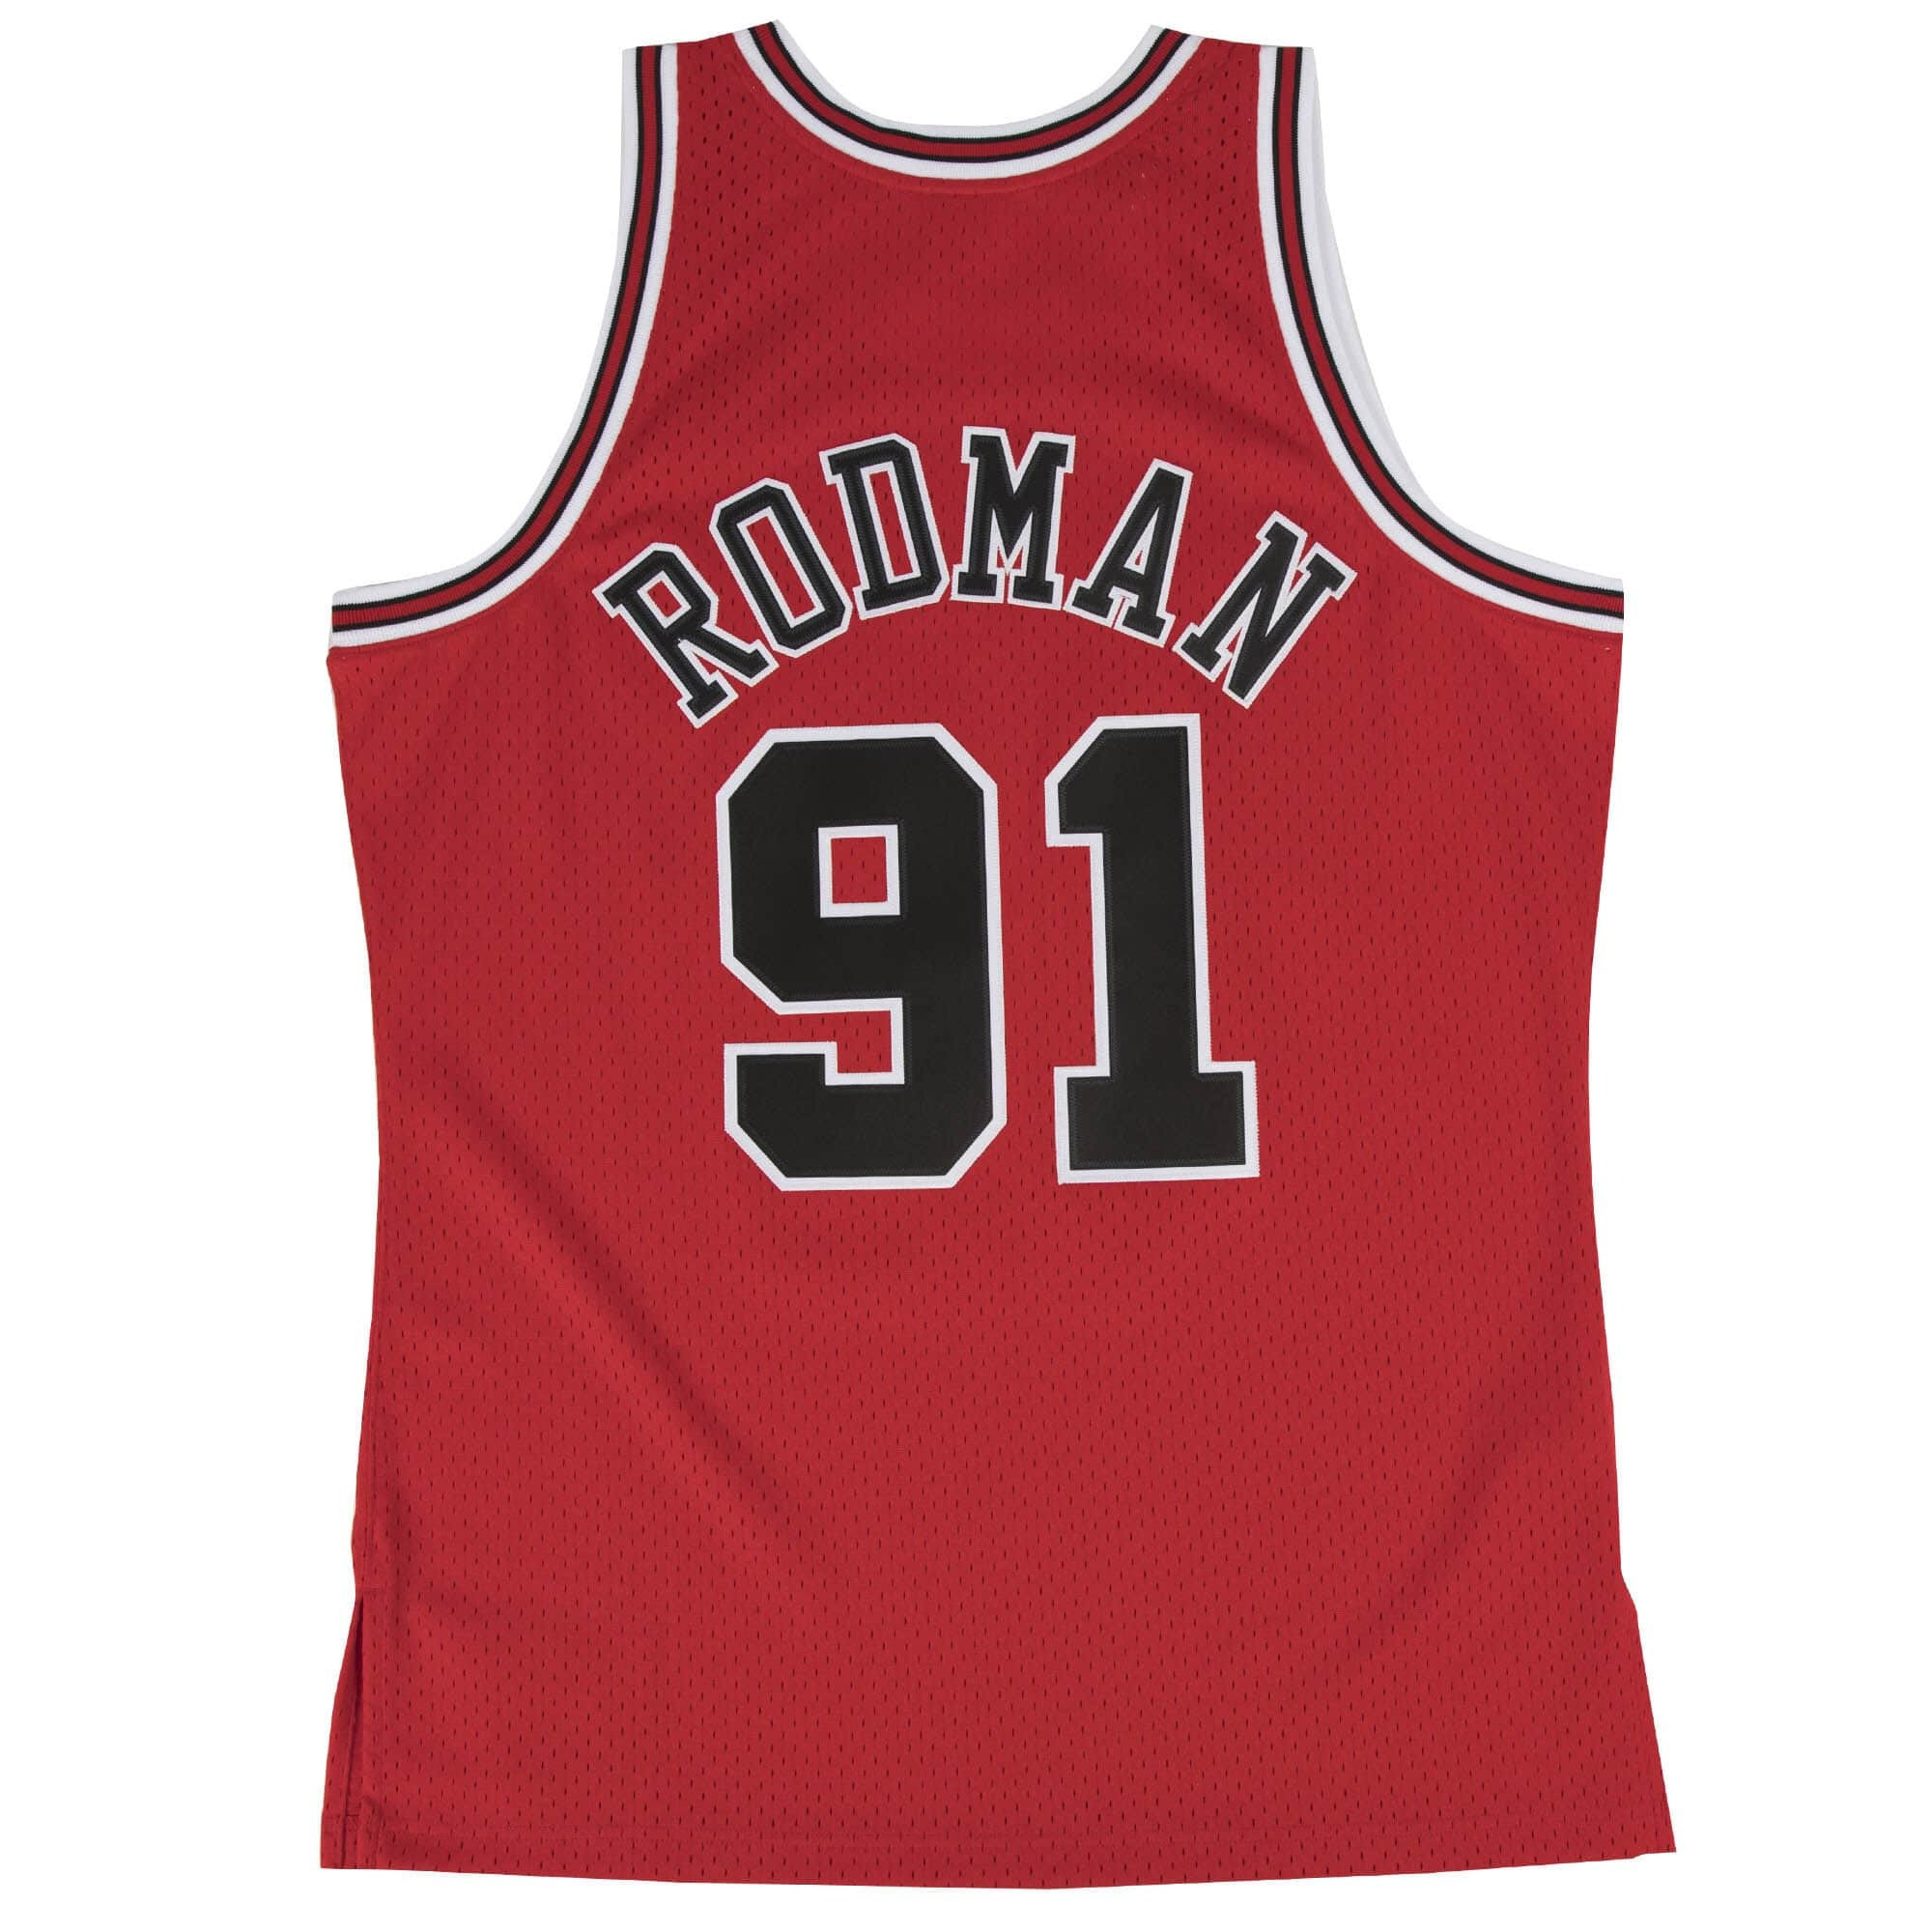 Men's Mitchell & Ness NBA Chicago Bulls Dennis Rodman Road Swingman Jersey 1997-98 Basketball Jersey - Scarlet - SMJYGS18154-DRD